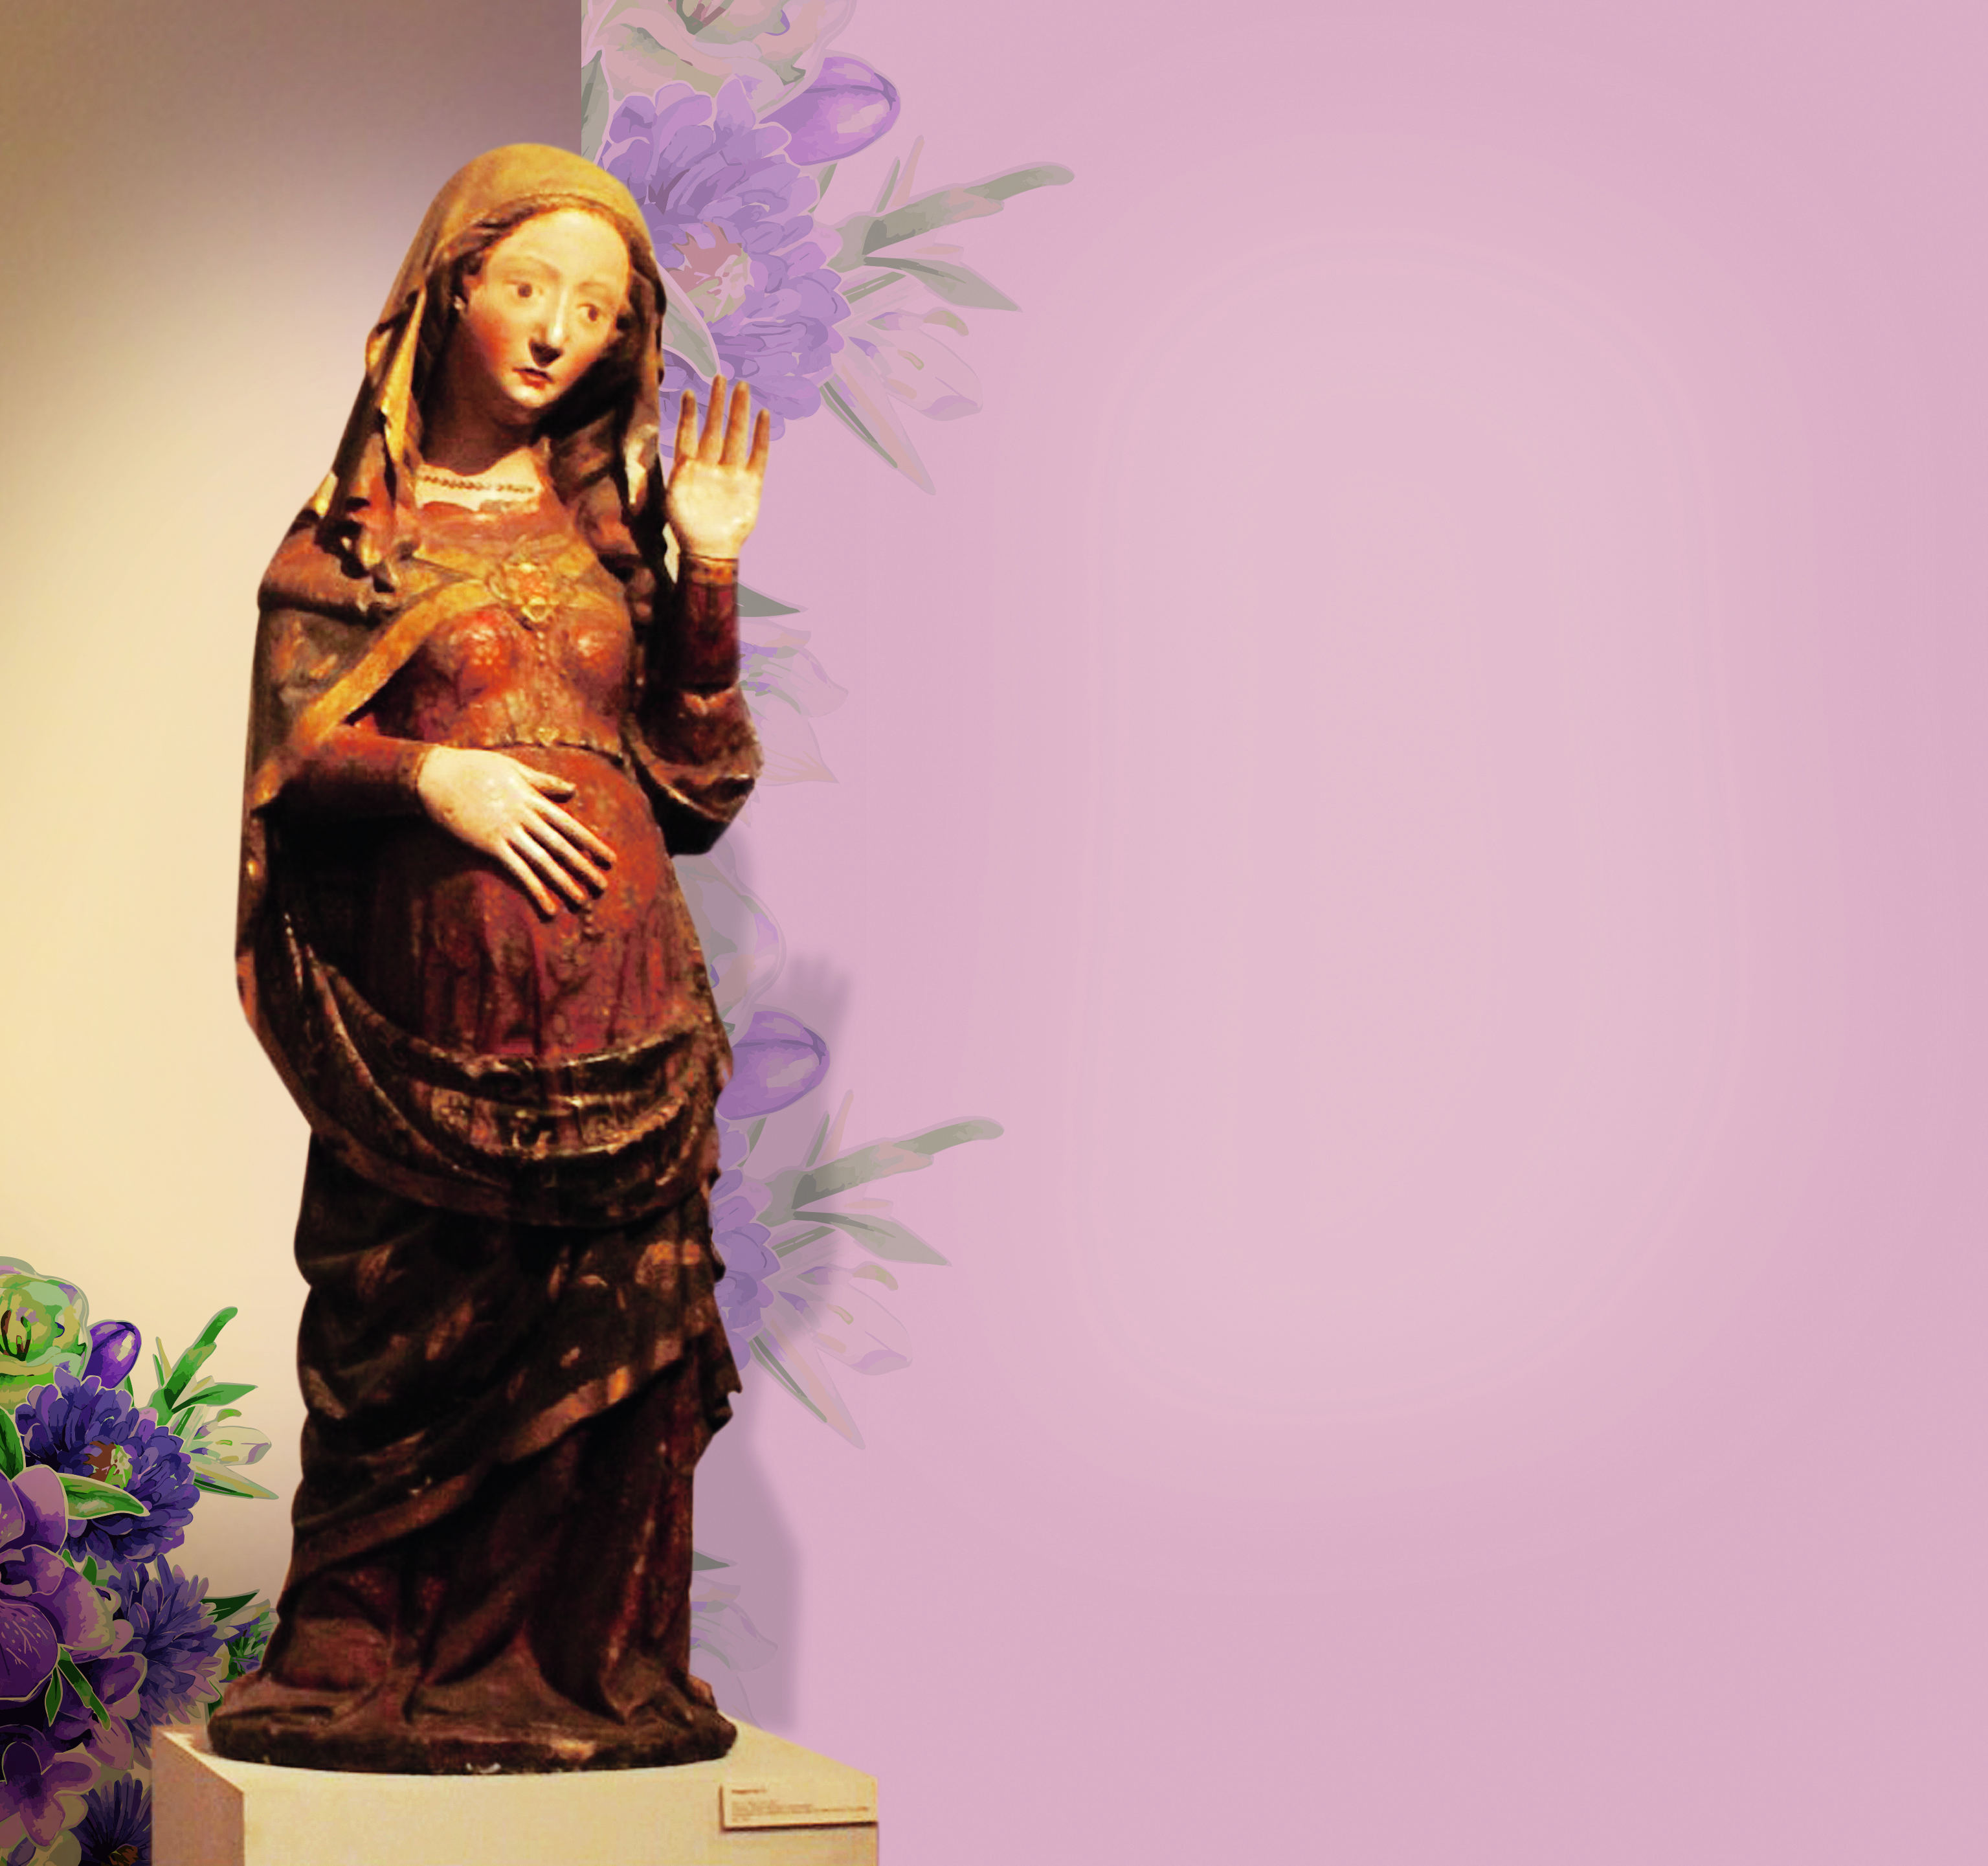 Na ilustração, trazemos Nossa Senhora do Ó ou da Expectação que indica a expectativa do parto na qual se encontrava a Virgem Maria. Nossa Senhora do Ó é uma devoção mariana surgida em Toledo, na Espanha, no século VII. Naquela época, a festa da Anunciação de Maria era celebrada no dia 18 de dezembro.